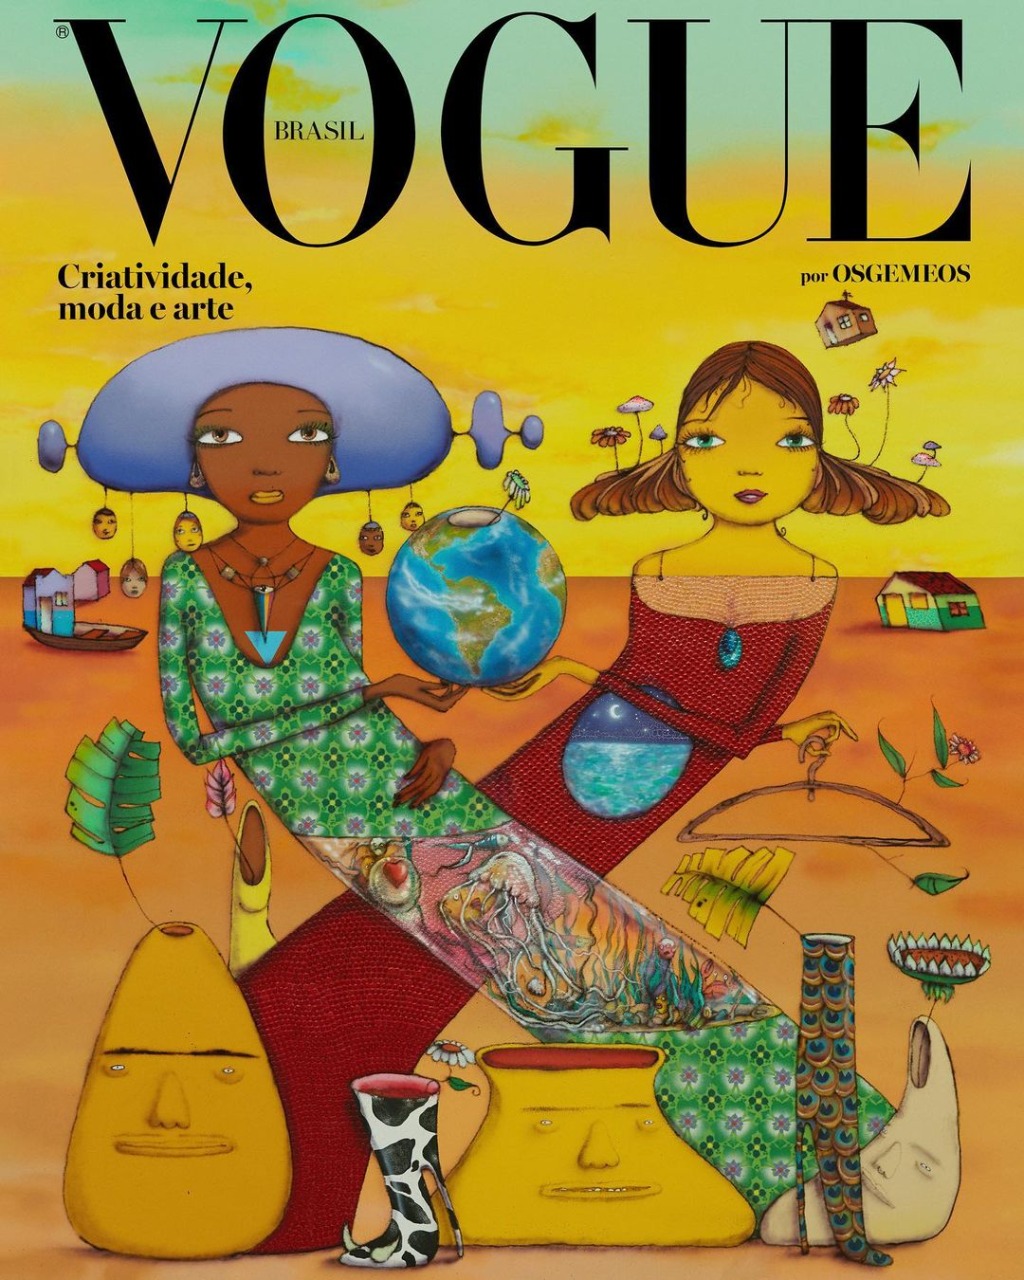 Criatividade: por dentro da Vogue Brasil de março estrelada por obra de OSGEMEOS